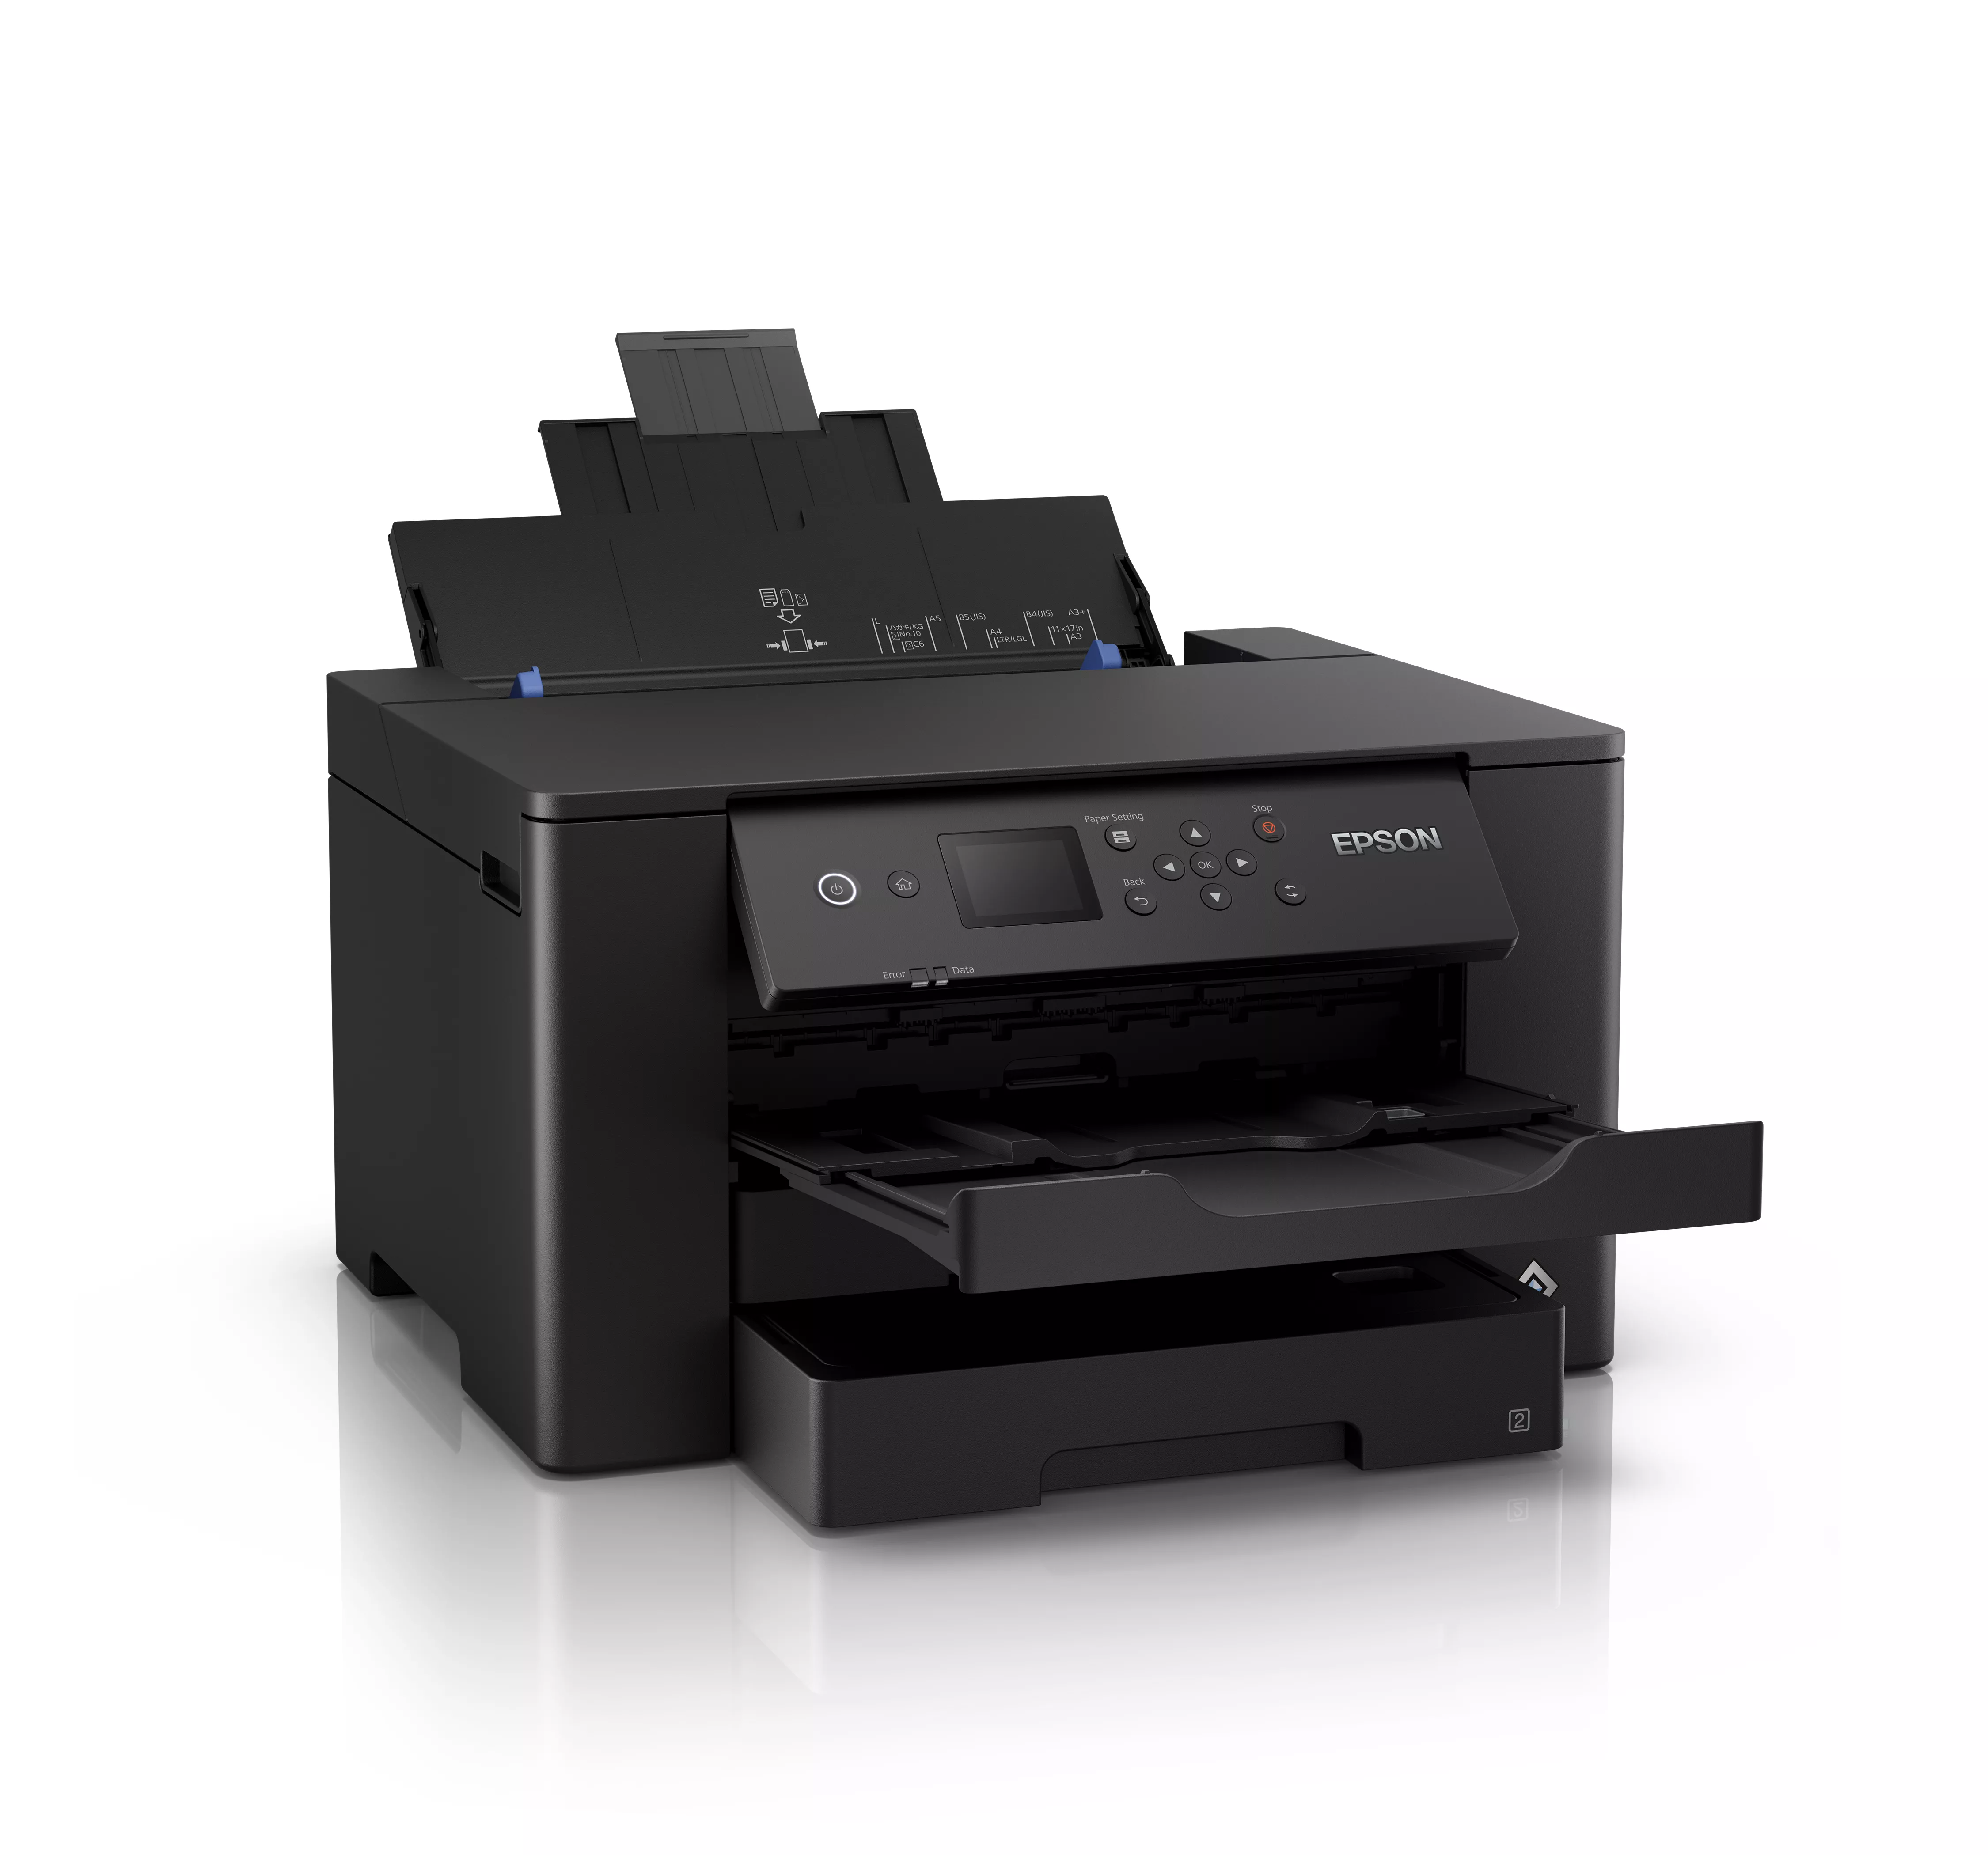 Vente EPSON WorkForce WF-7310DTW Printer colour Duplex ink-jet Epson au meilleur prix - visuel 2